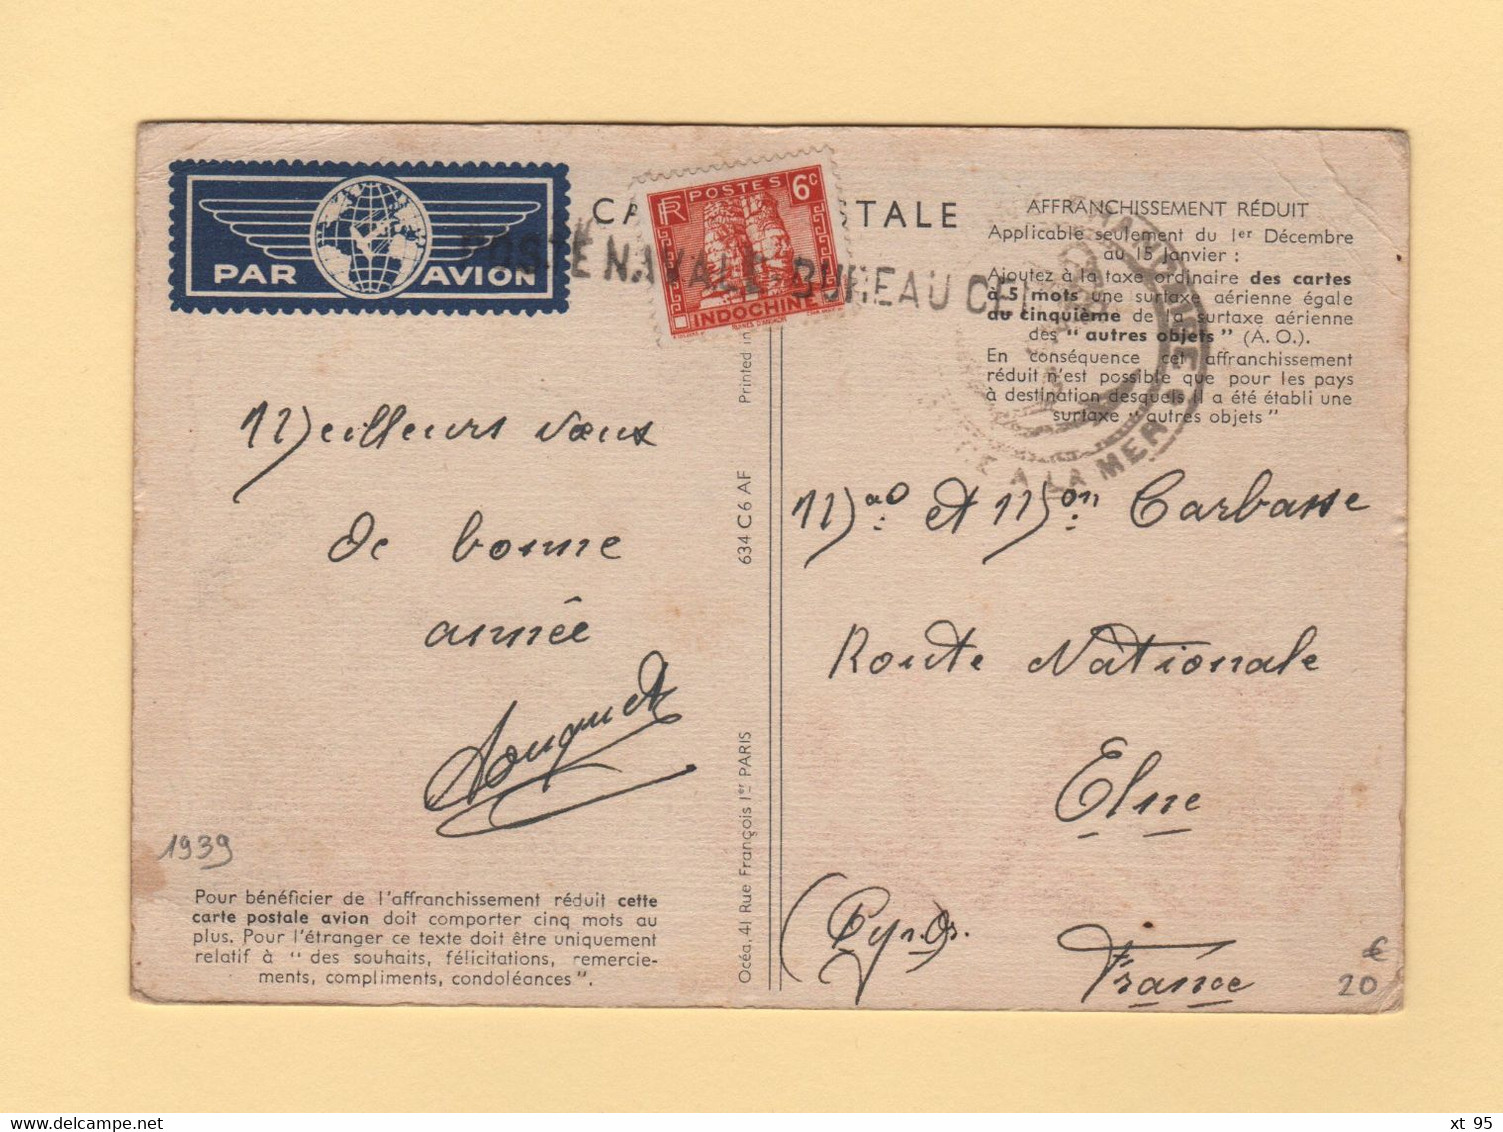 Air France - Carte Postale Affranchissement Reduit - Poste Navale Bureau Central - Indochine - 1960-.... Lettres & Documents